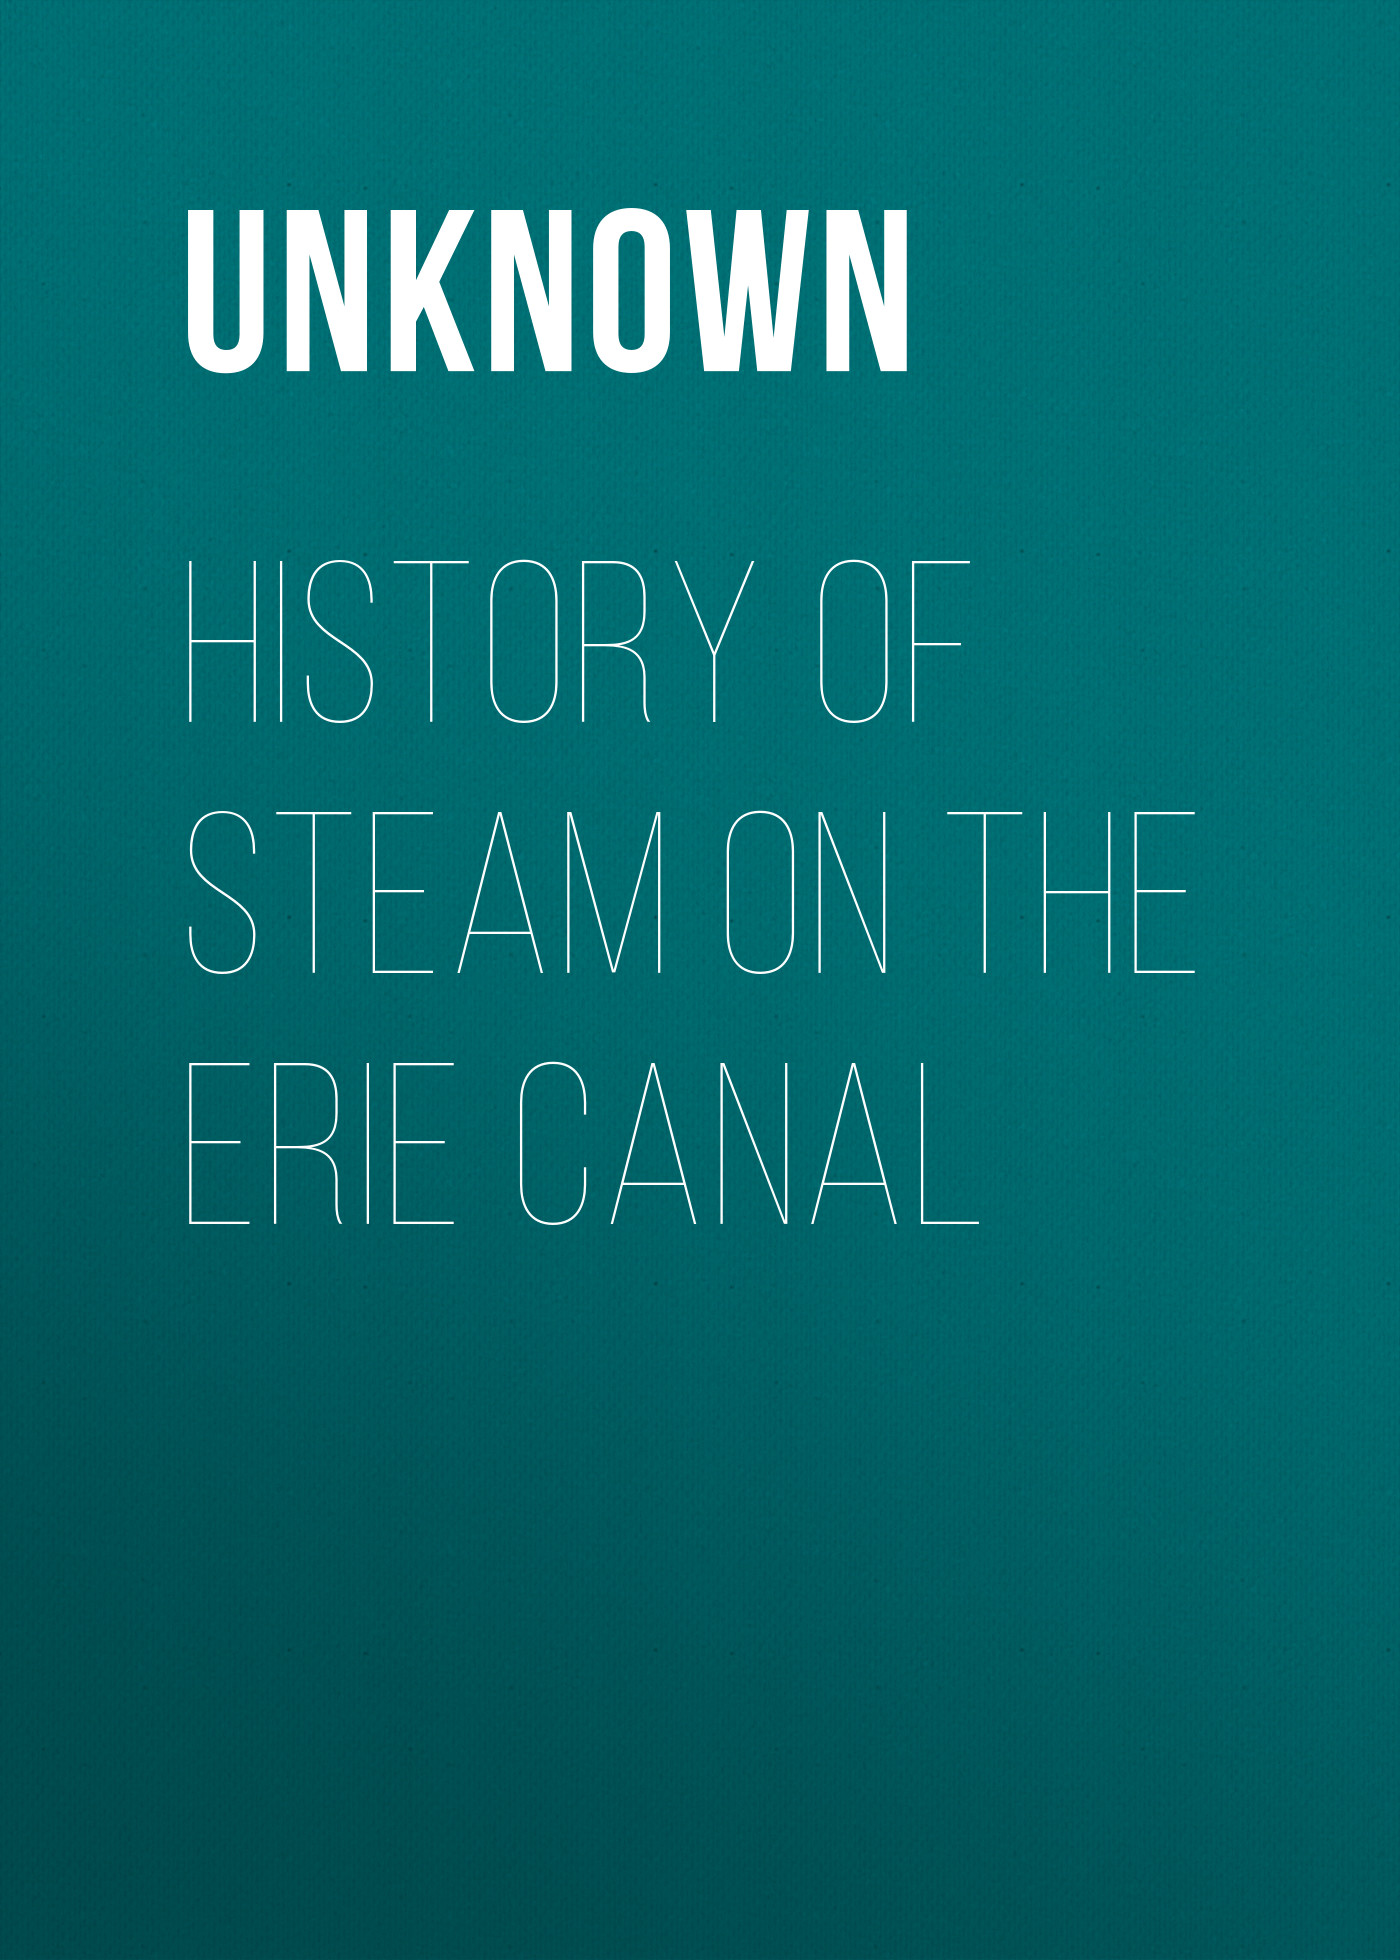 Книга History of Steam on the Erie Canal из серии , созданная Unknown Unknown, может относится к жанру Зарубежная классика, История, Зарубежная образовательная литература, Зарубежная старинная литература. Стоимость электронной книги History of Steam on the Erie Canal с идентификатором 35492863 составляет 0 руб.